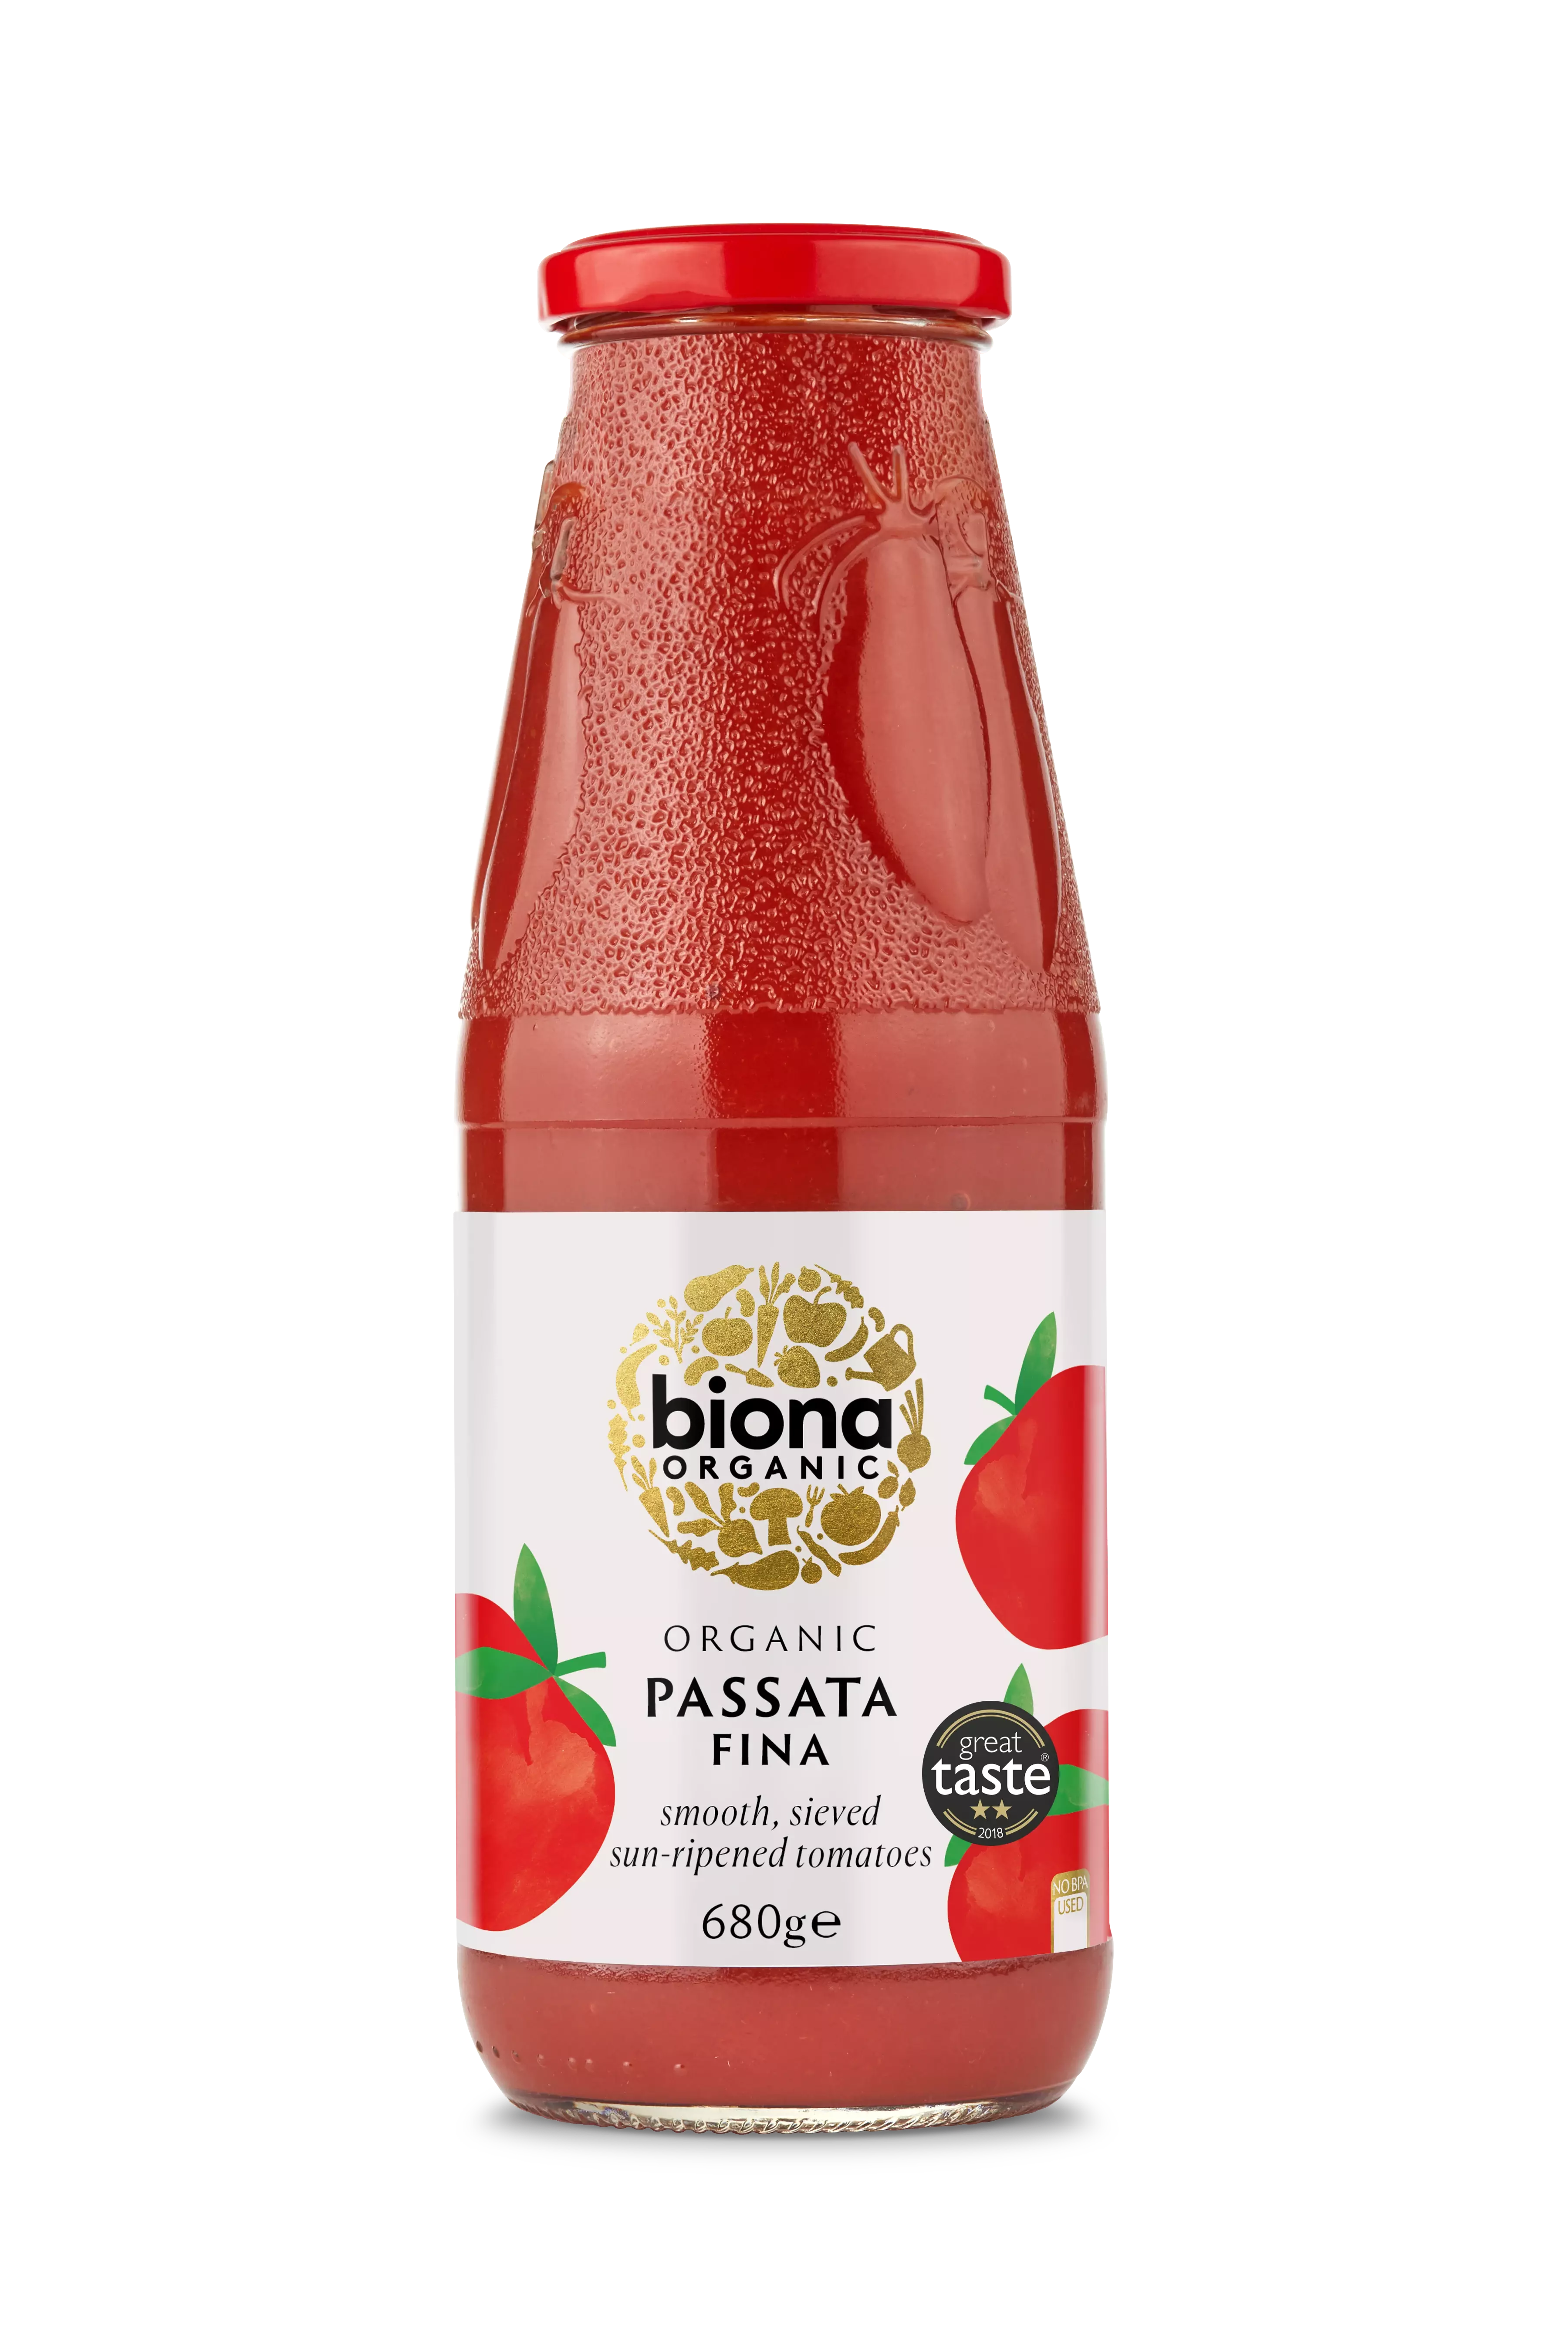 Biona Tomato Passata Fina Organic 680g